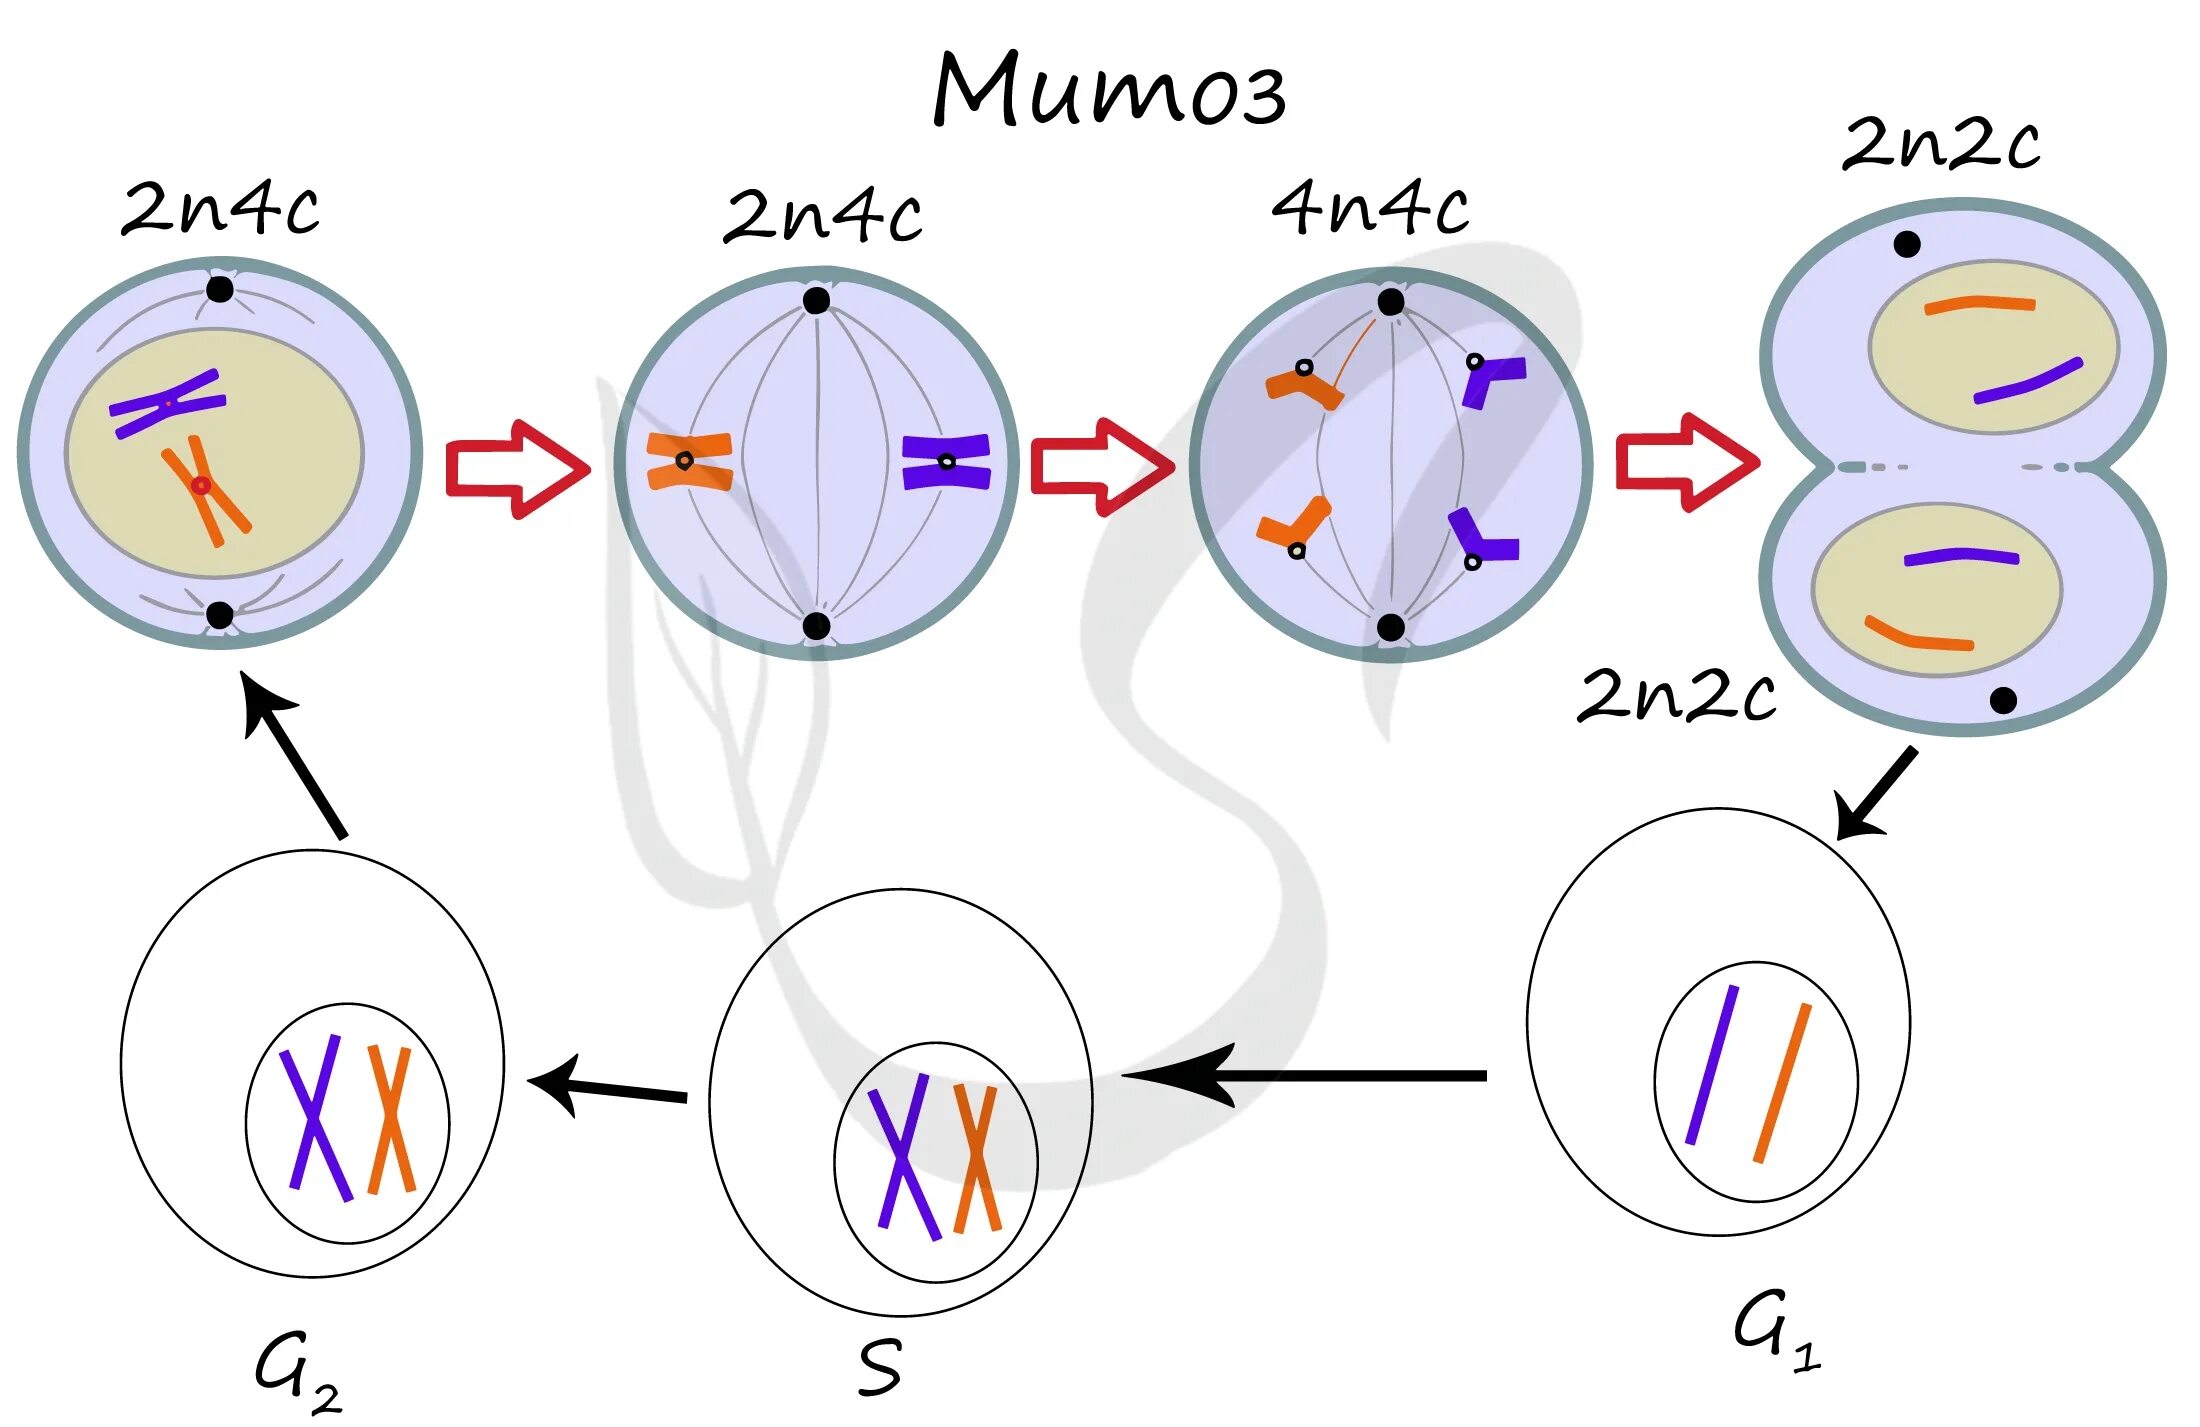 Набор хромосом и днк клетки 2n2c. Схема митоза 2n. Схема мейоза для клетки с хромосомным набором 2n 6. Фазы митоза 2n2c. Митоз схема 2n2c.